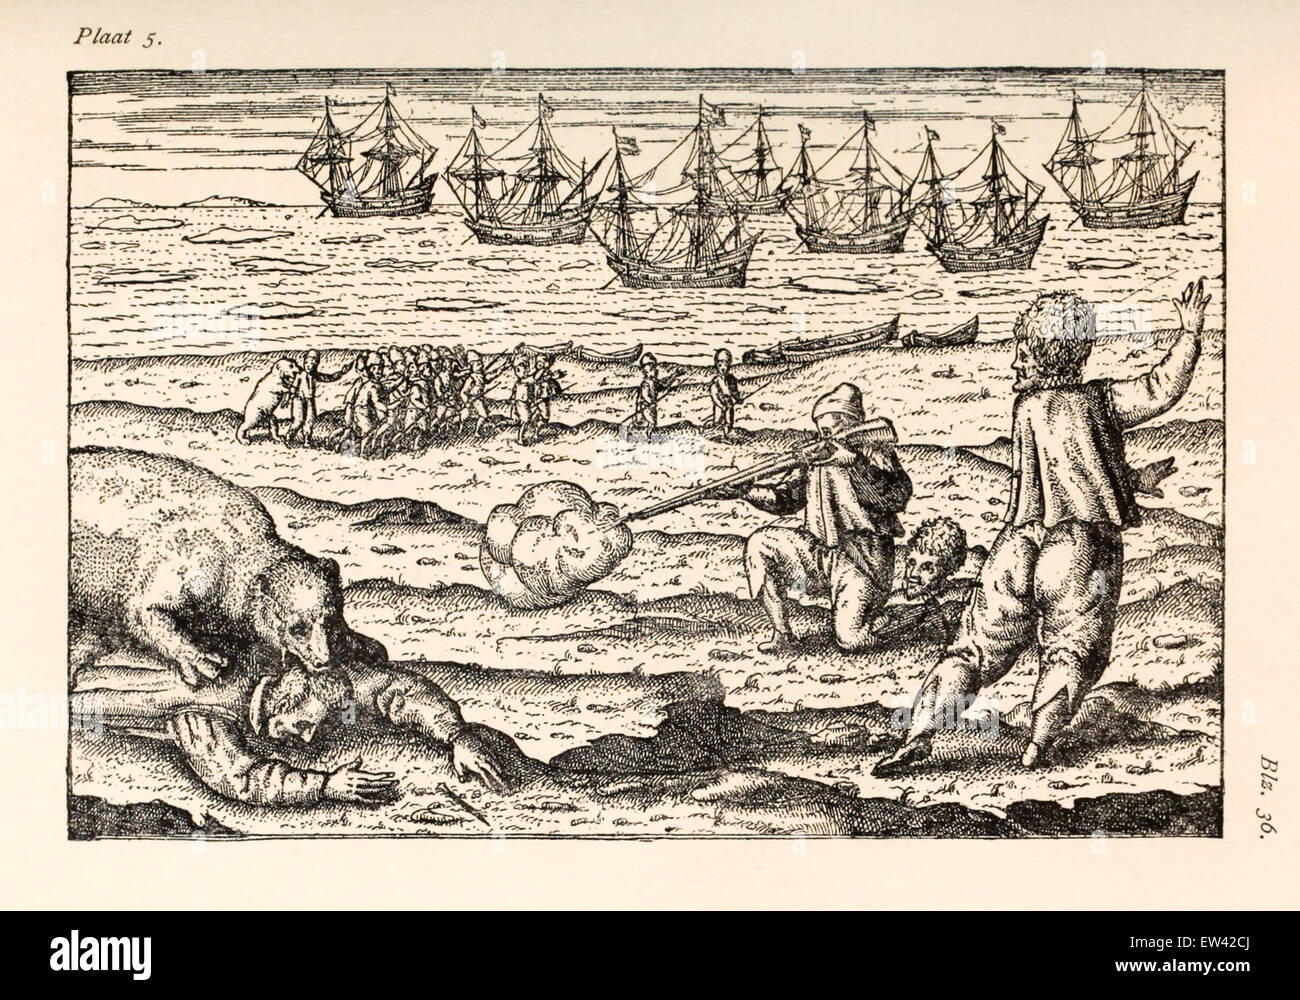 Scena dal terzo viaggio, equipaggio attaccato da orso polare. Willem Barentsz (1550-1597) illustrazione da Henricus Hondius (1573 - 1650). Vedere la descrizione per maggiori informazioni. Foto Stock